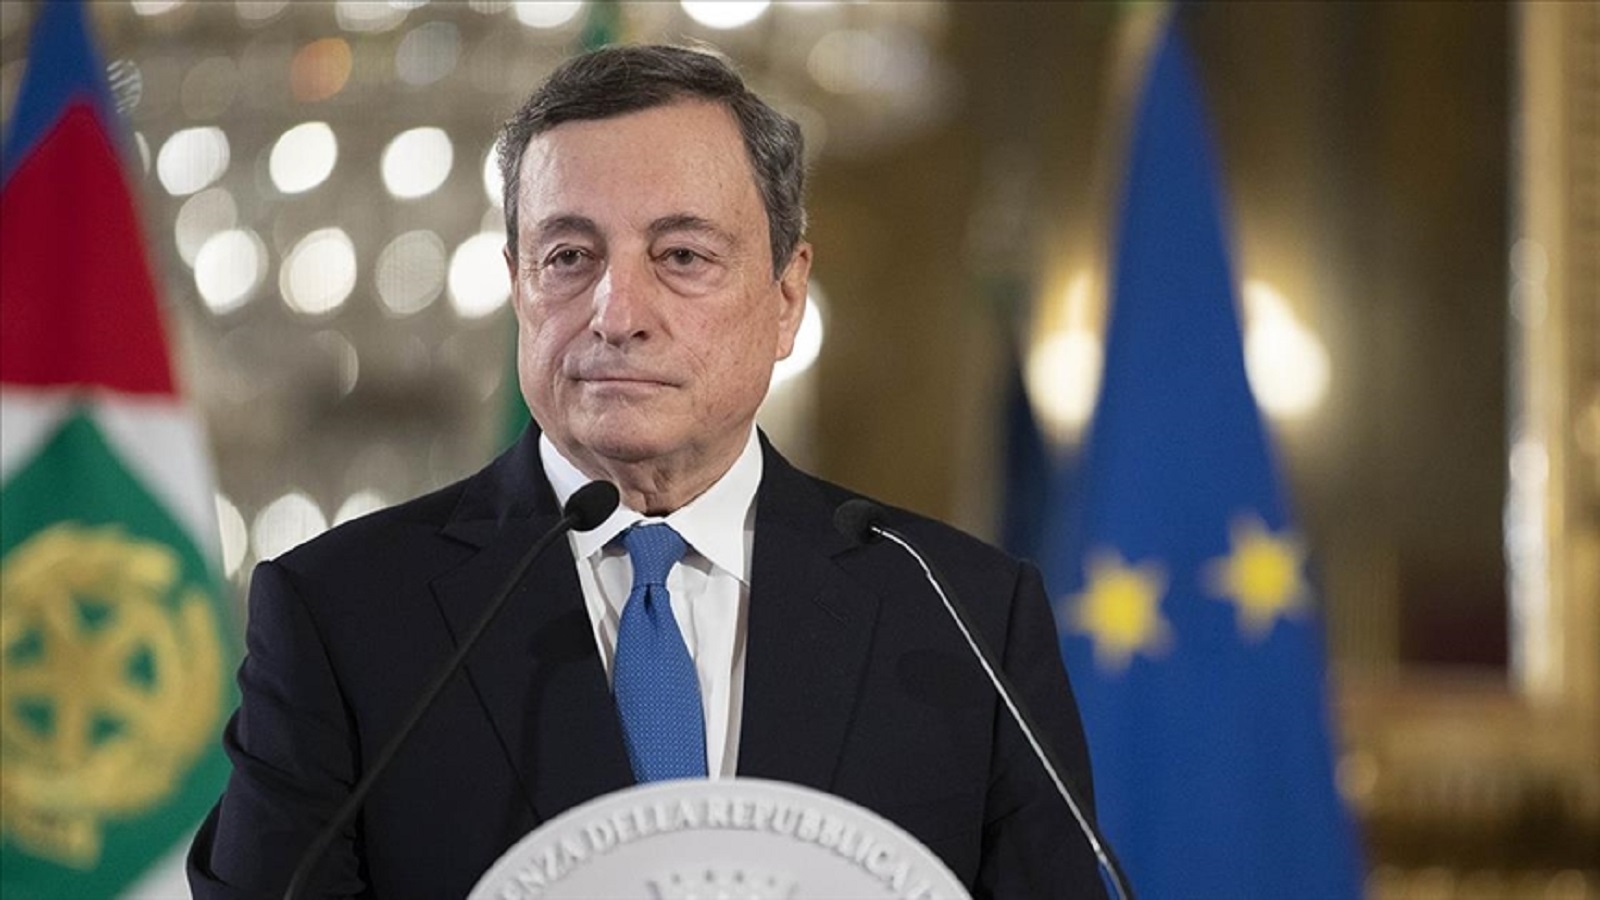 Draghi recomienda enfocarse en una 'agenda positiva' entre la UE y Turquía